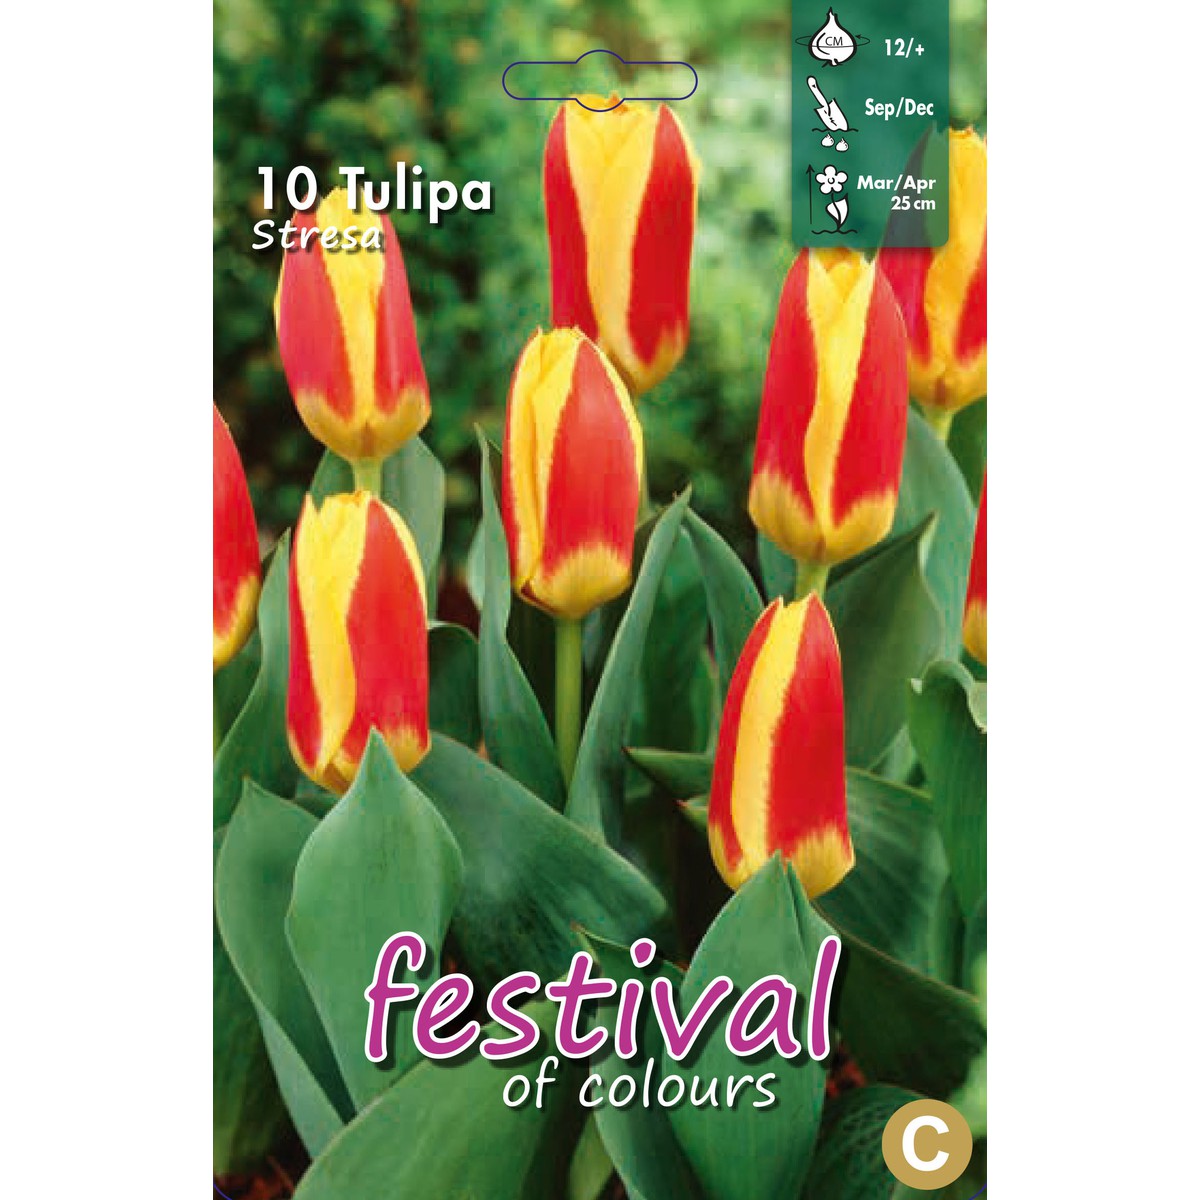   Tulipes 'Stresa'  10 pcs 12/